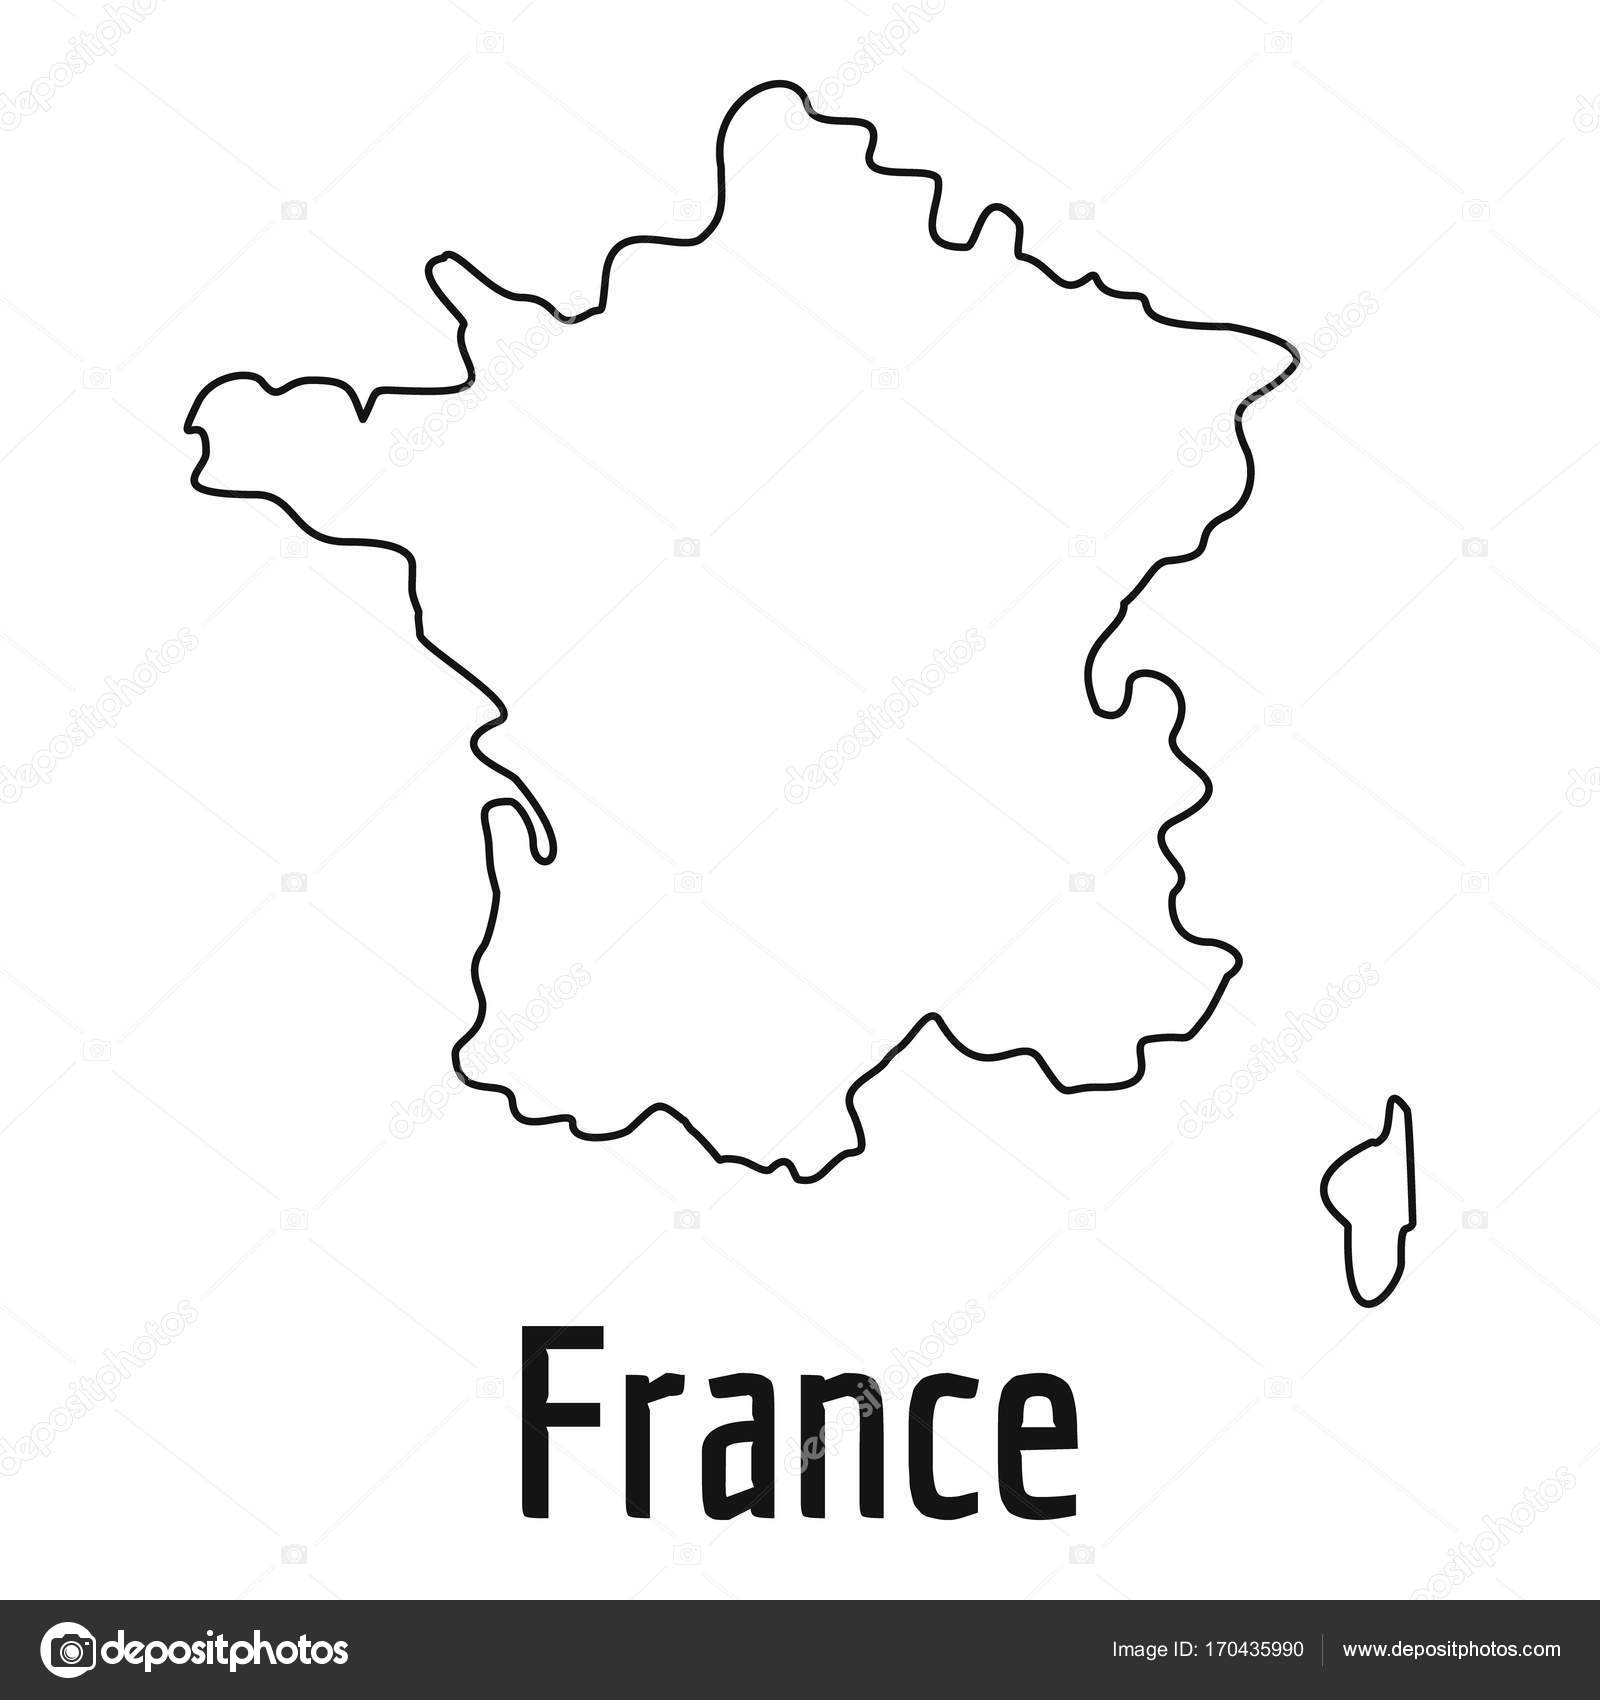 フランス イラスト 簡単 花の画像無料